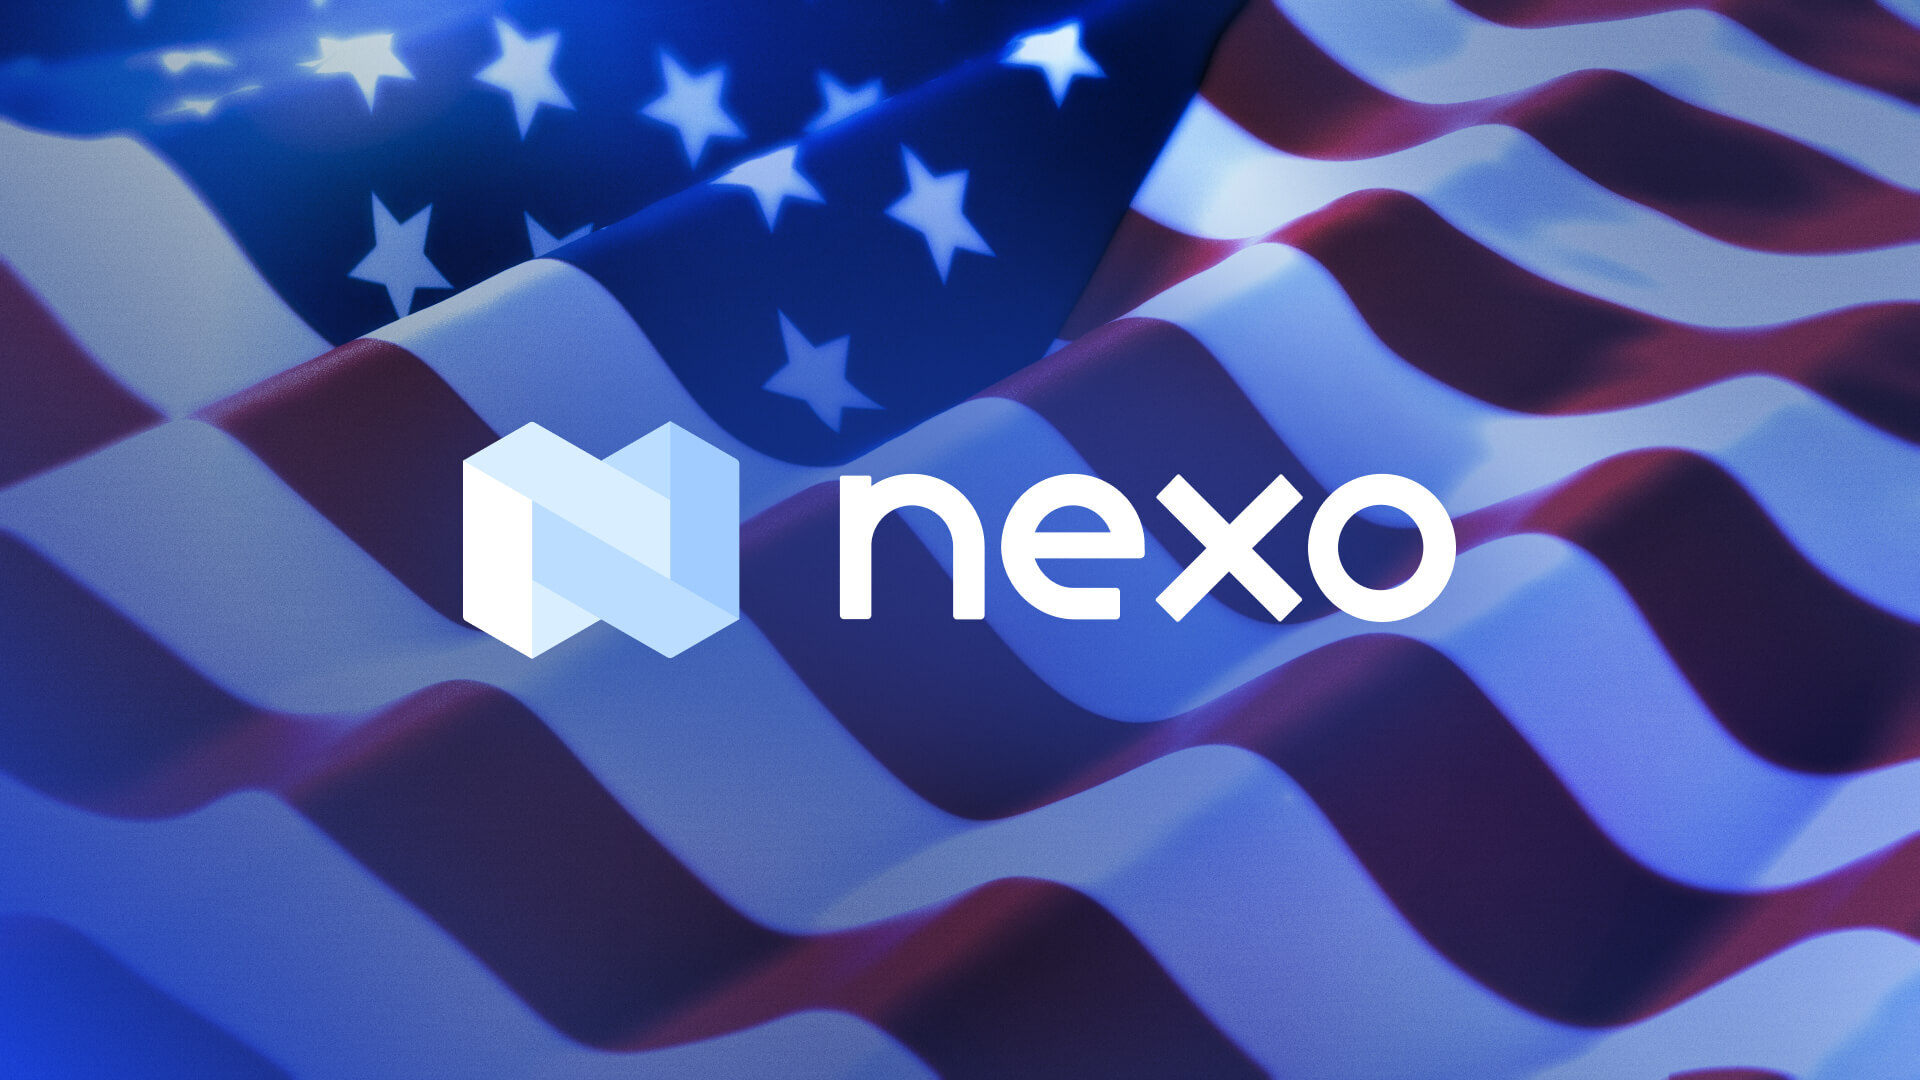 Nexo Reaches Landmark Resolution with U.S. Regulators